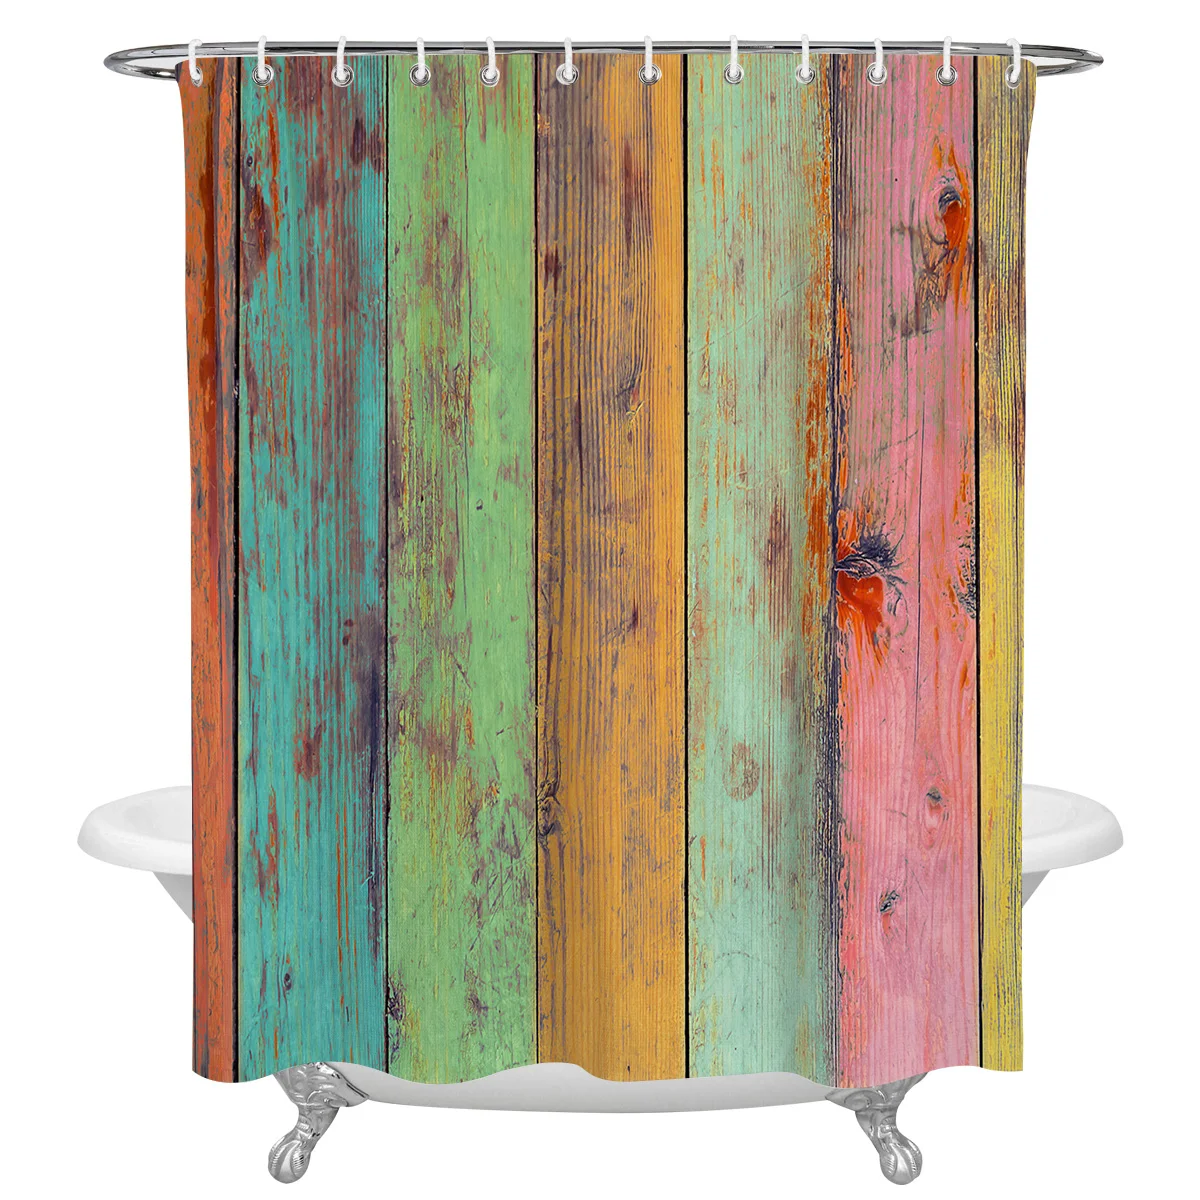 

Цветная деревянная занавеска для душа, занавеска для ванной, водонепроницаемая занавеска для ванной из полиэстера с крючками